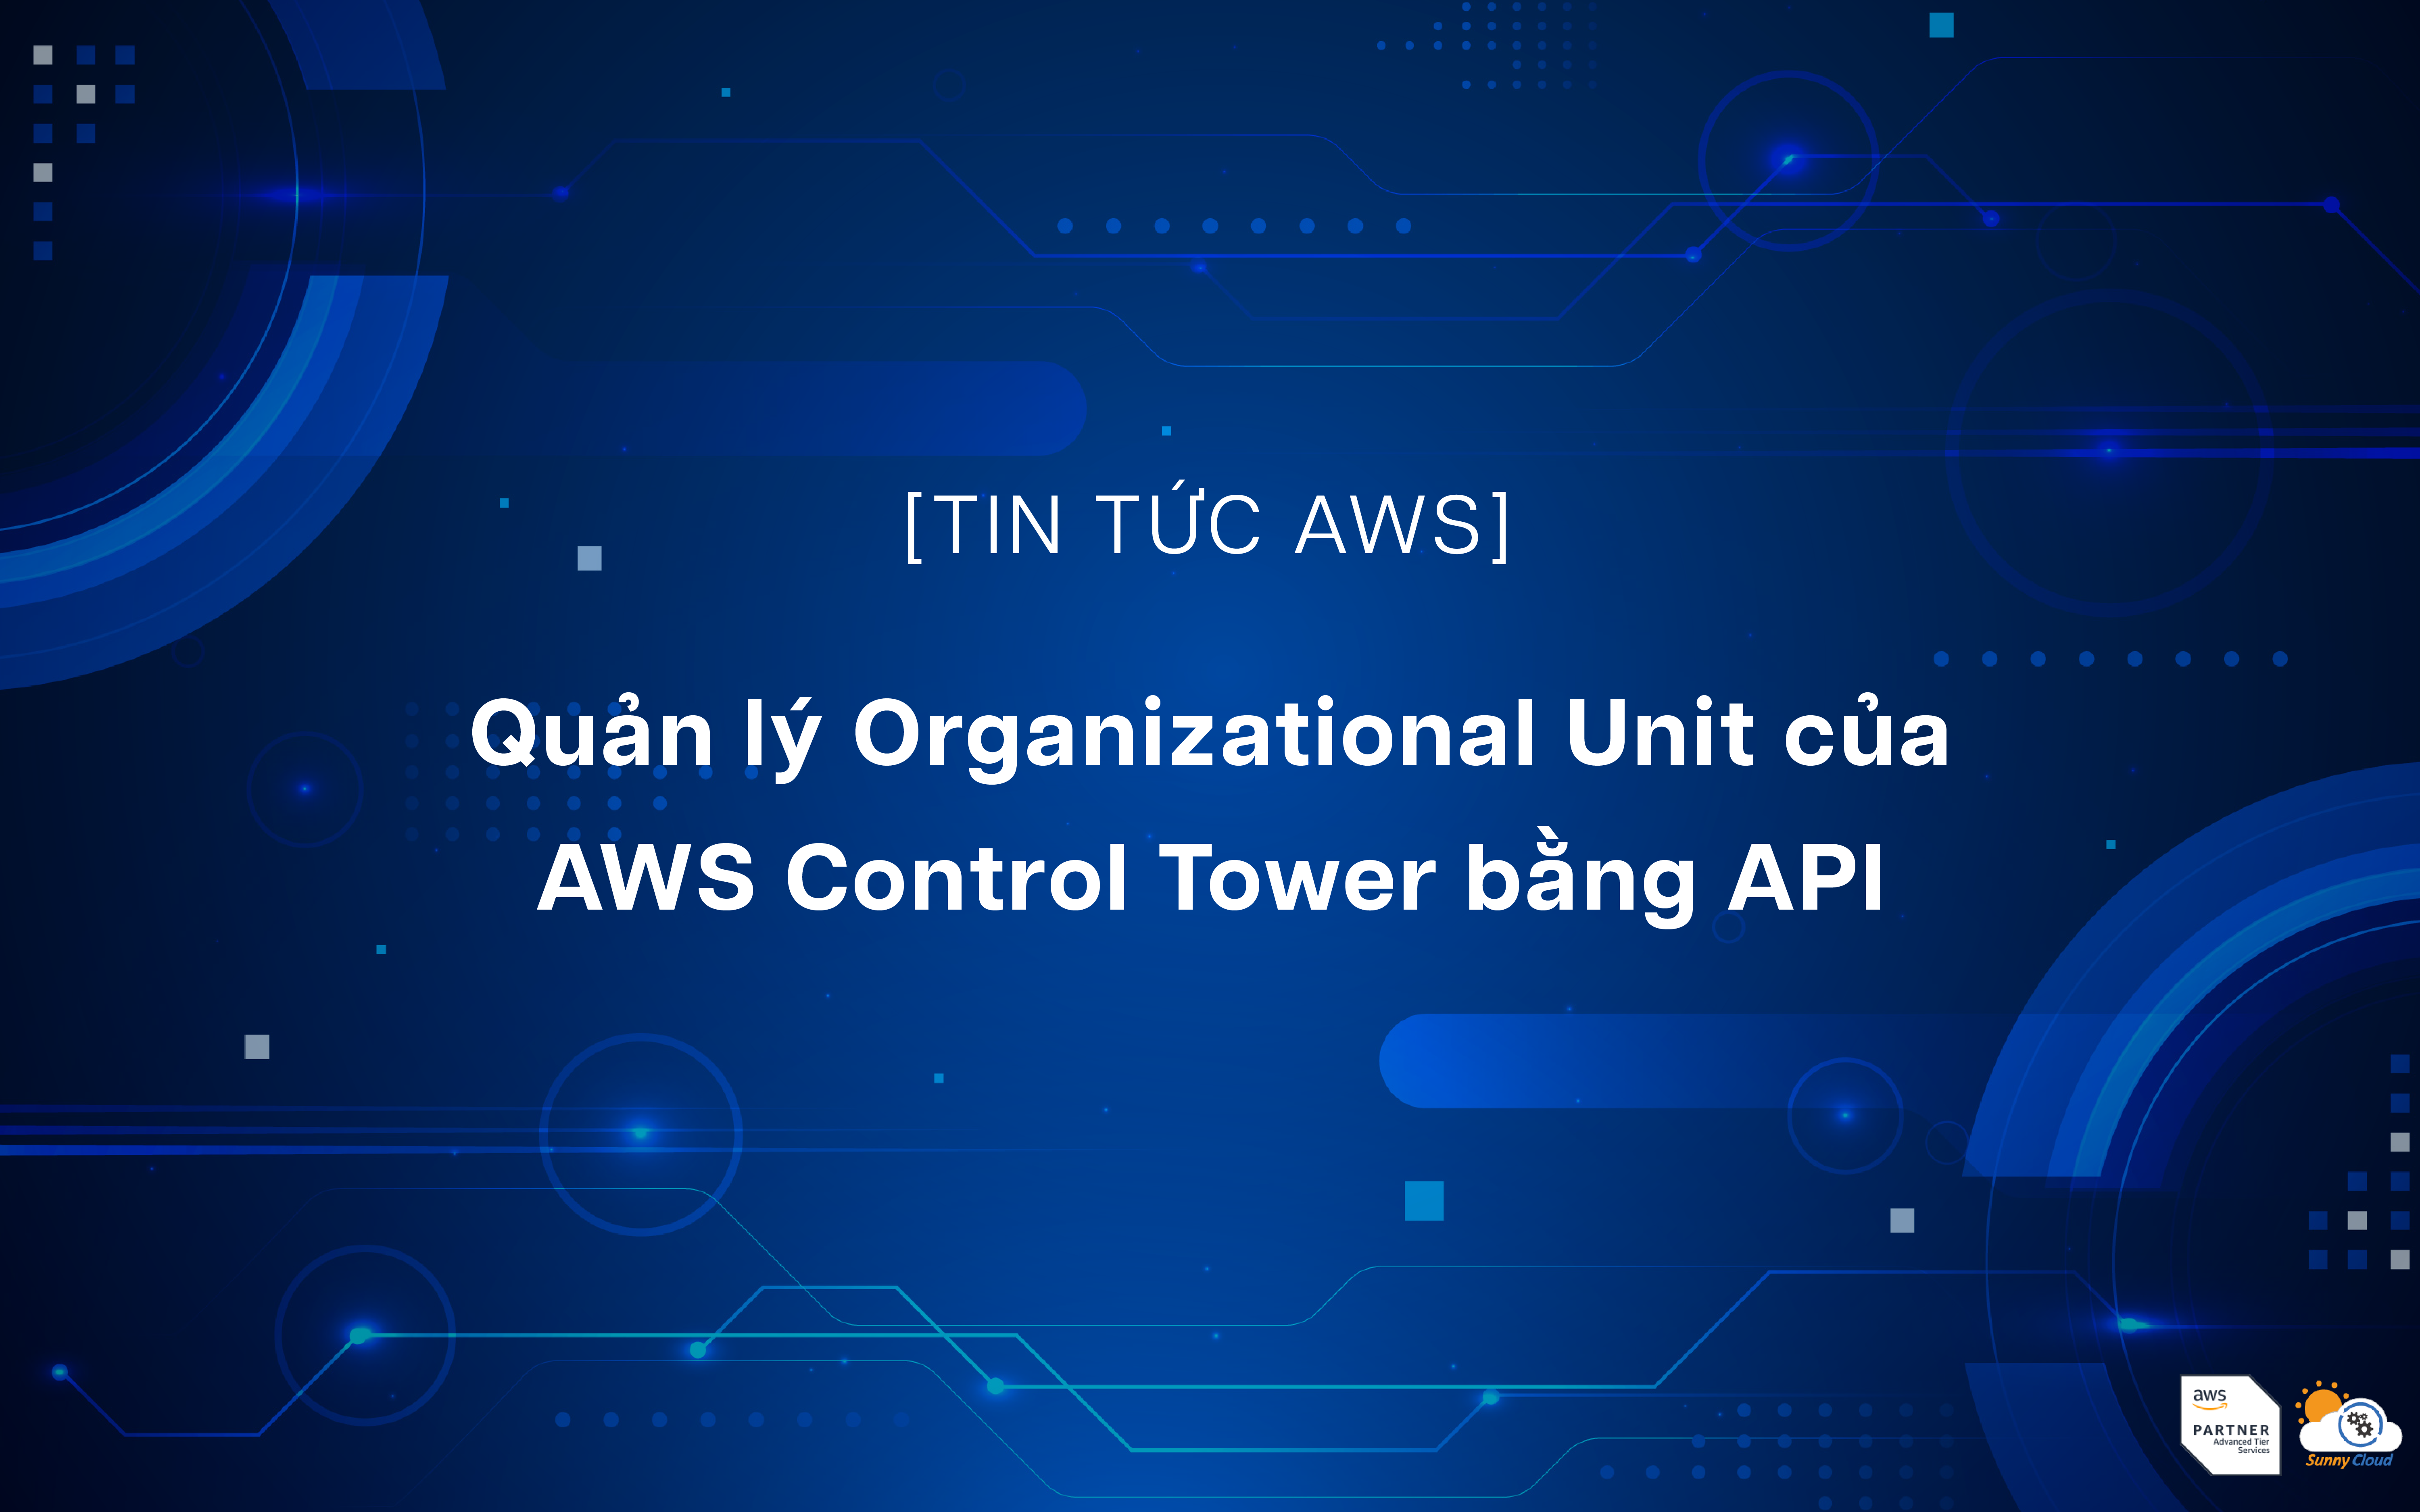 Organizational Unit của AWS Control Tower hiện có thể được vận hành bằng API